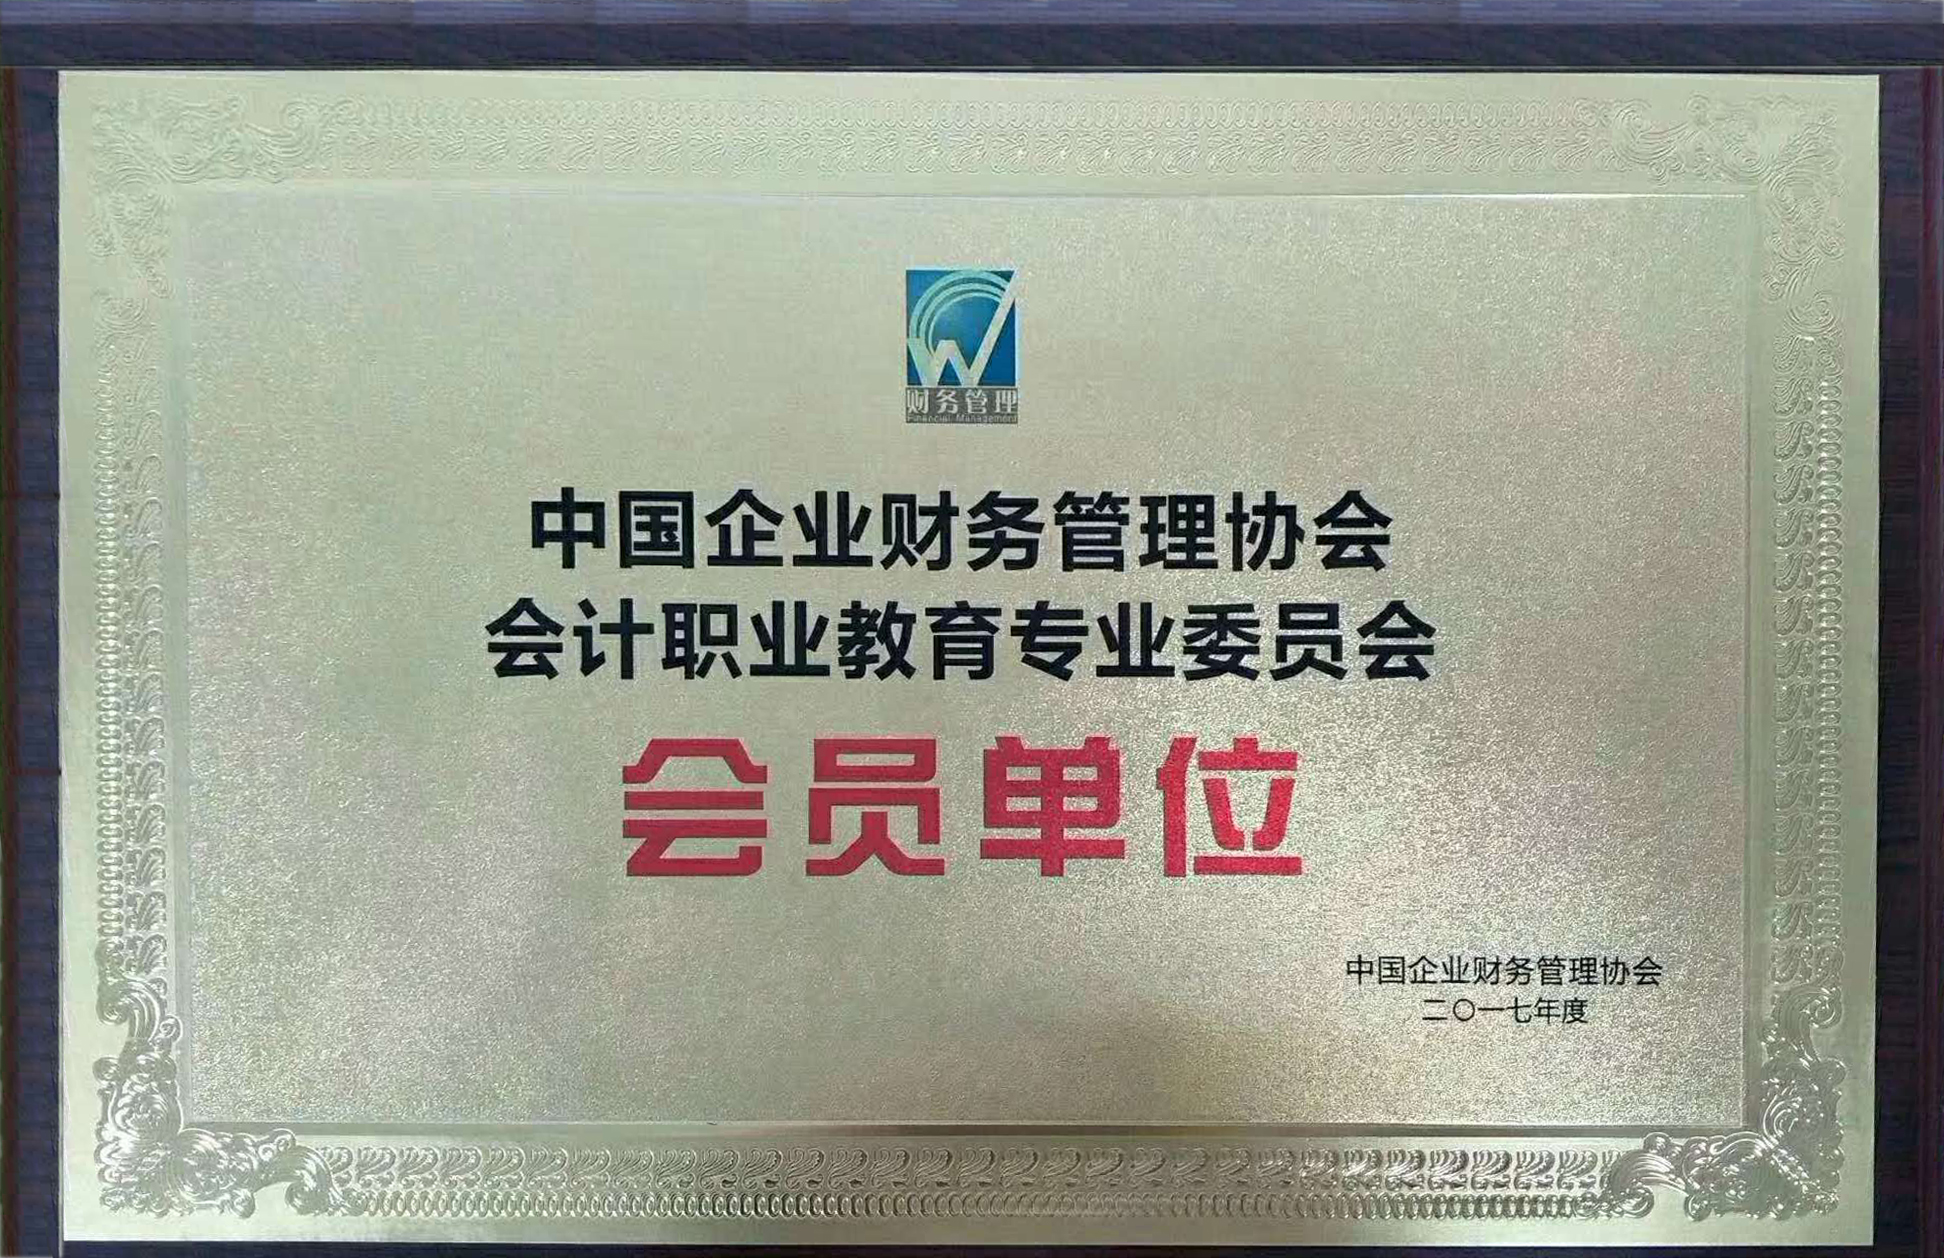 中国企业财务管理协会会计职业教育专业委员会